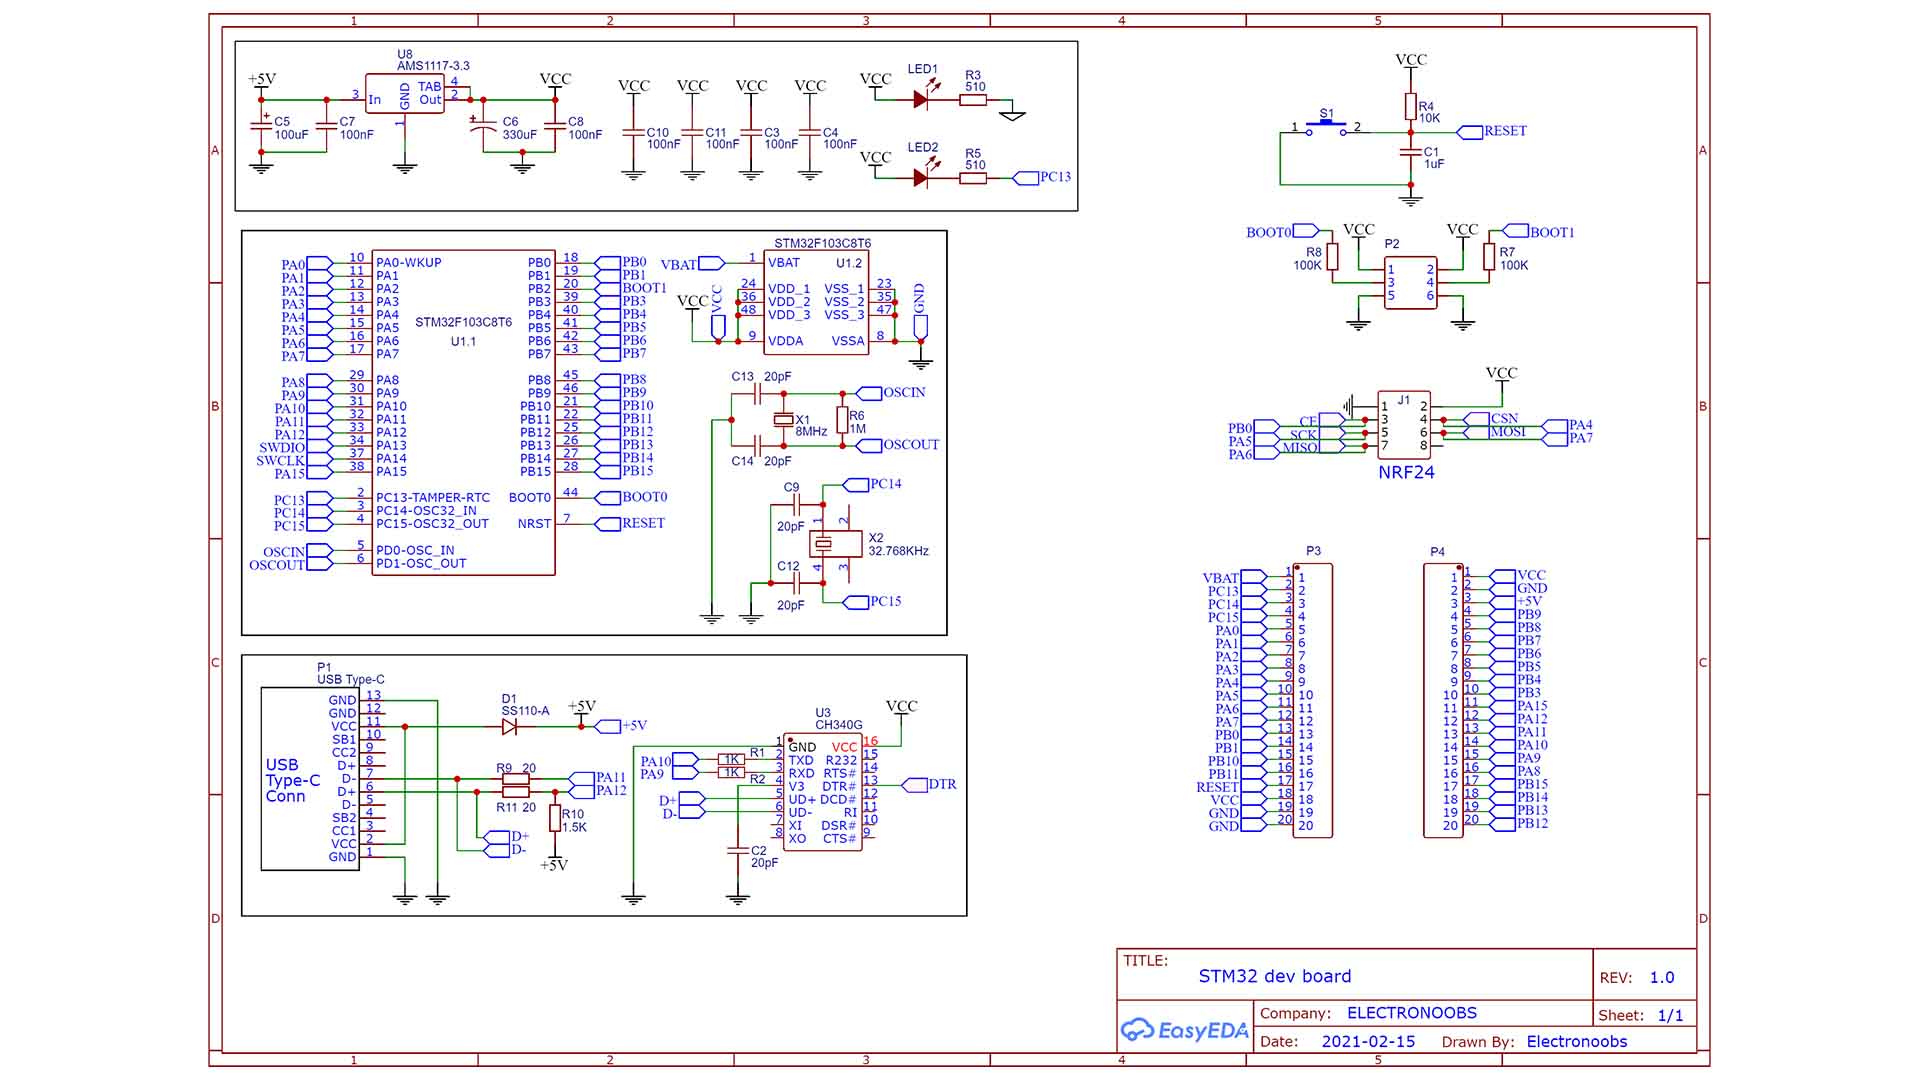 STM32 baisc configuration schematic PCB